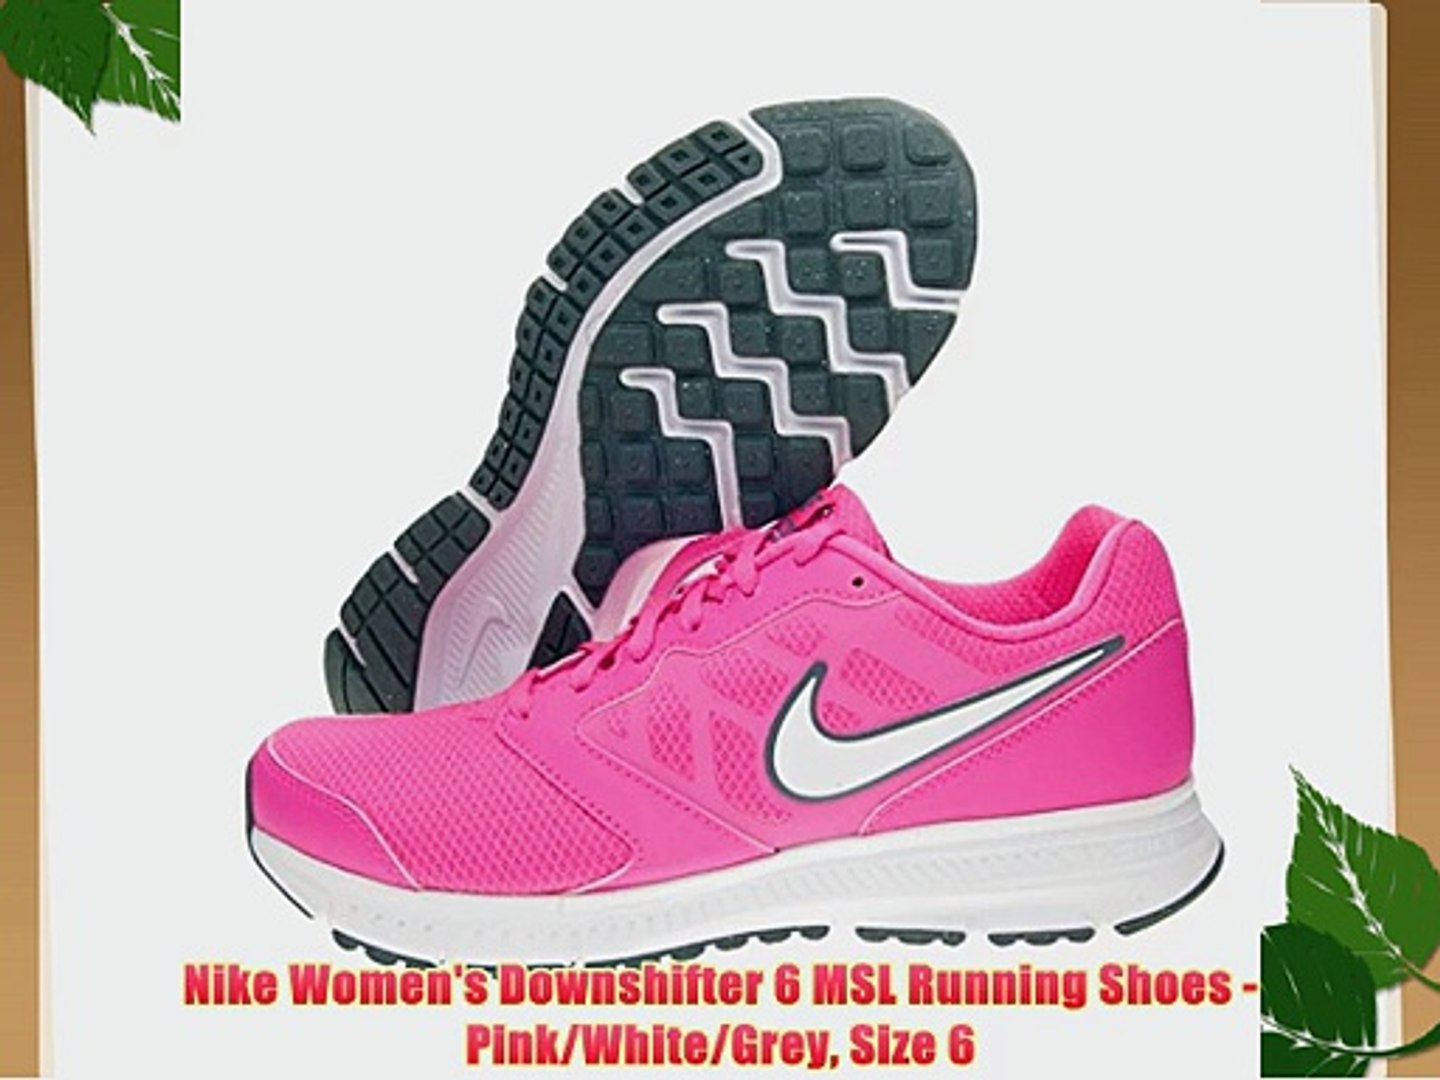 nike downshifter 6 women's running shoes